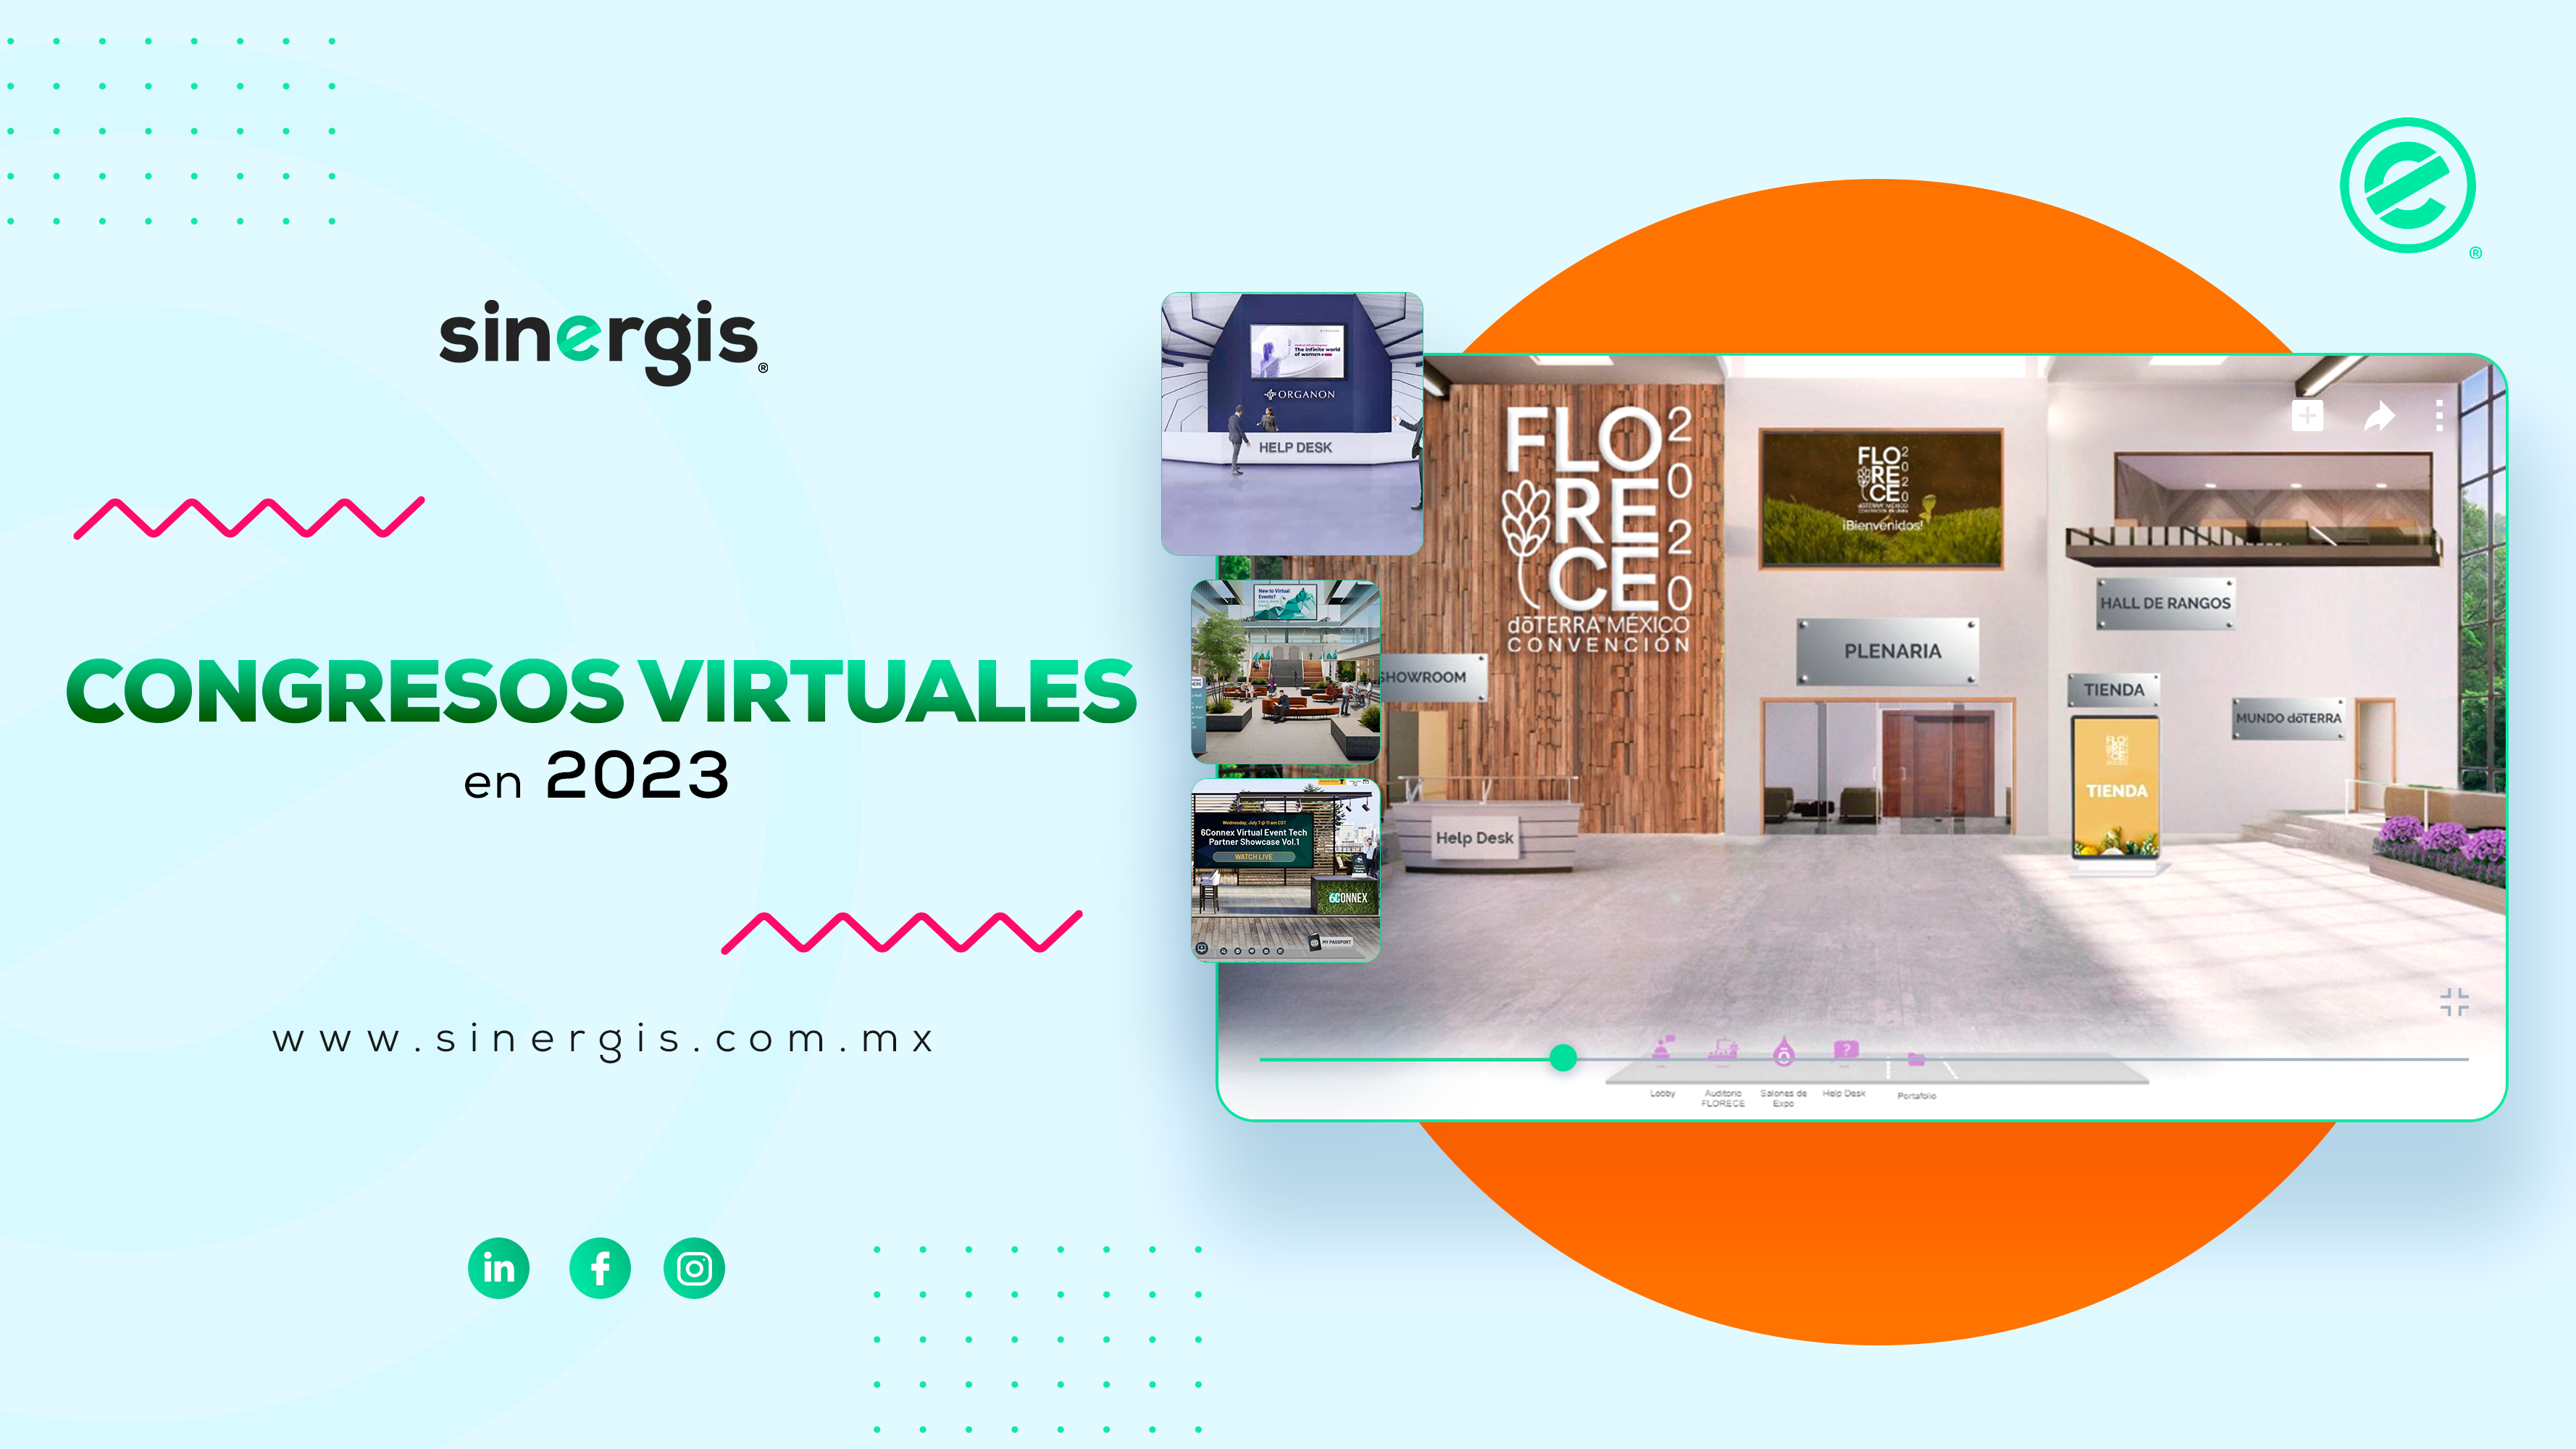 Eventos virtuales y congresos virtuales gracias a Sinergis y 6Connex